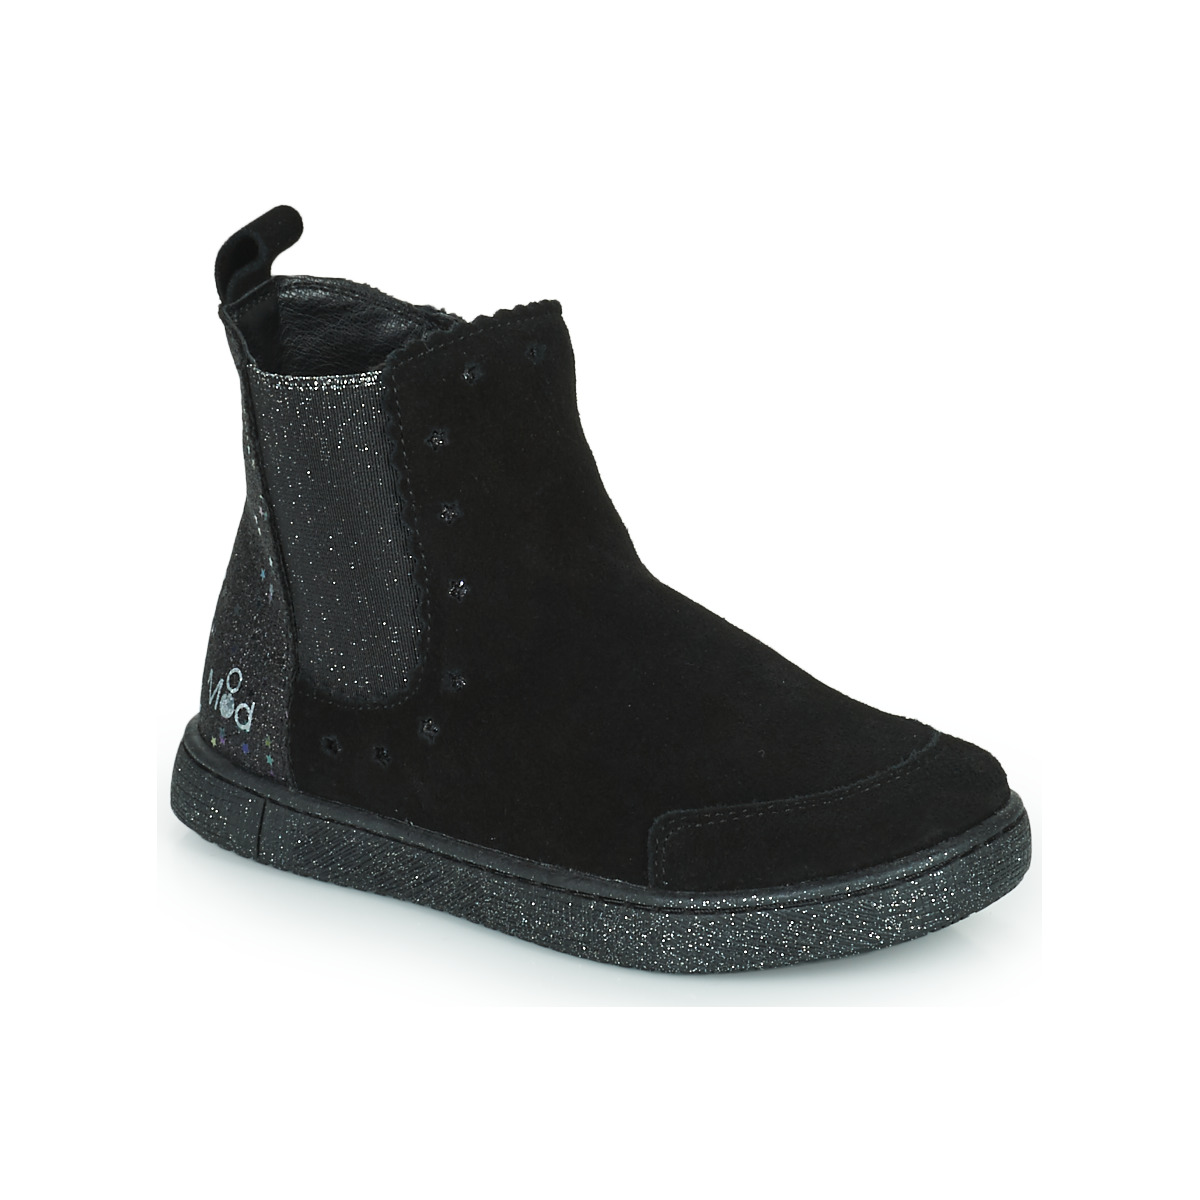 Chaussures Fille PRIMIGI Boots Mod'8 BLANOU Noir glitter